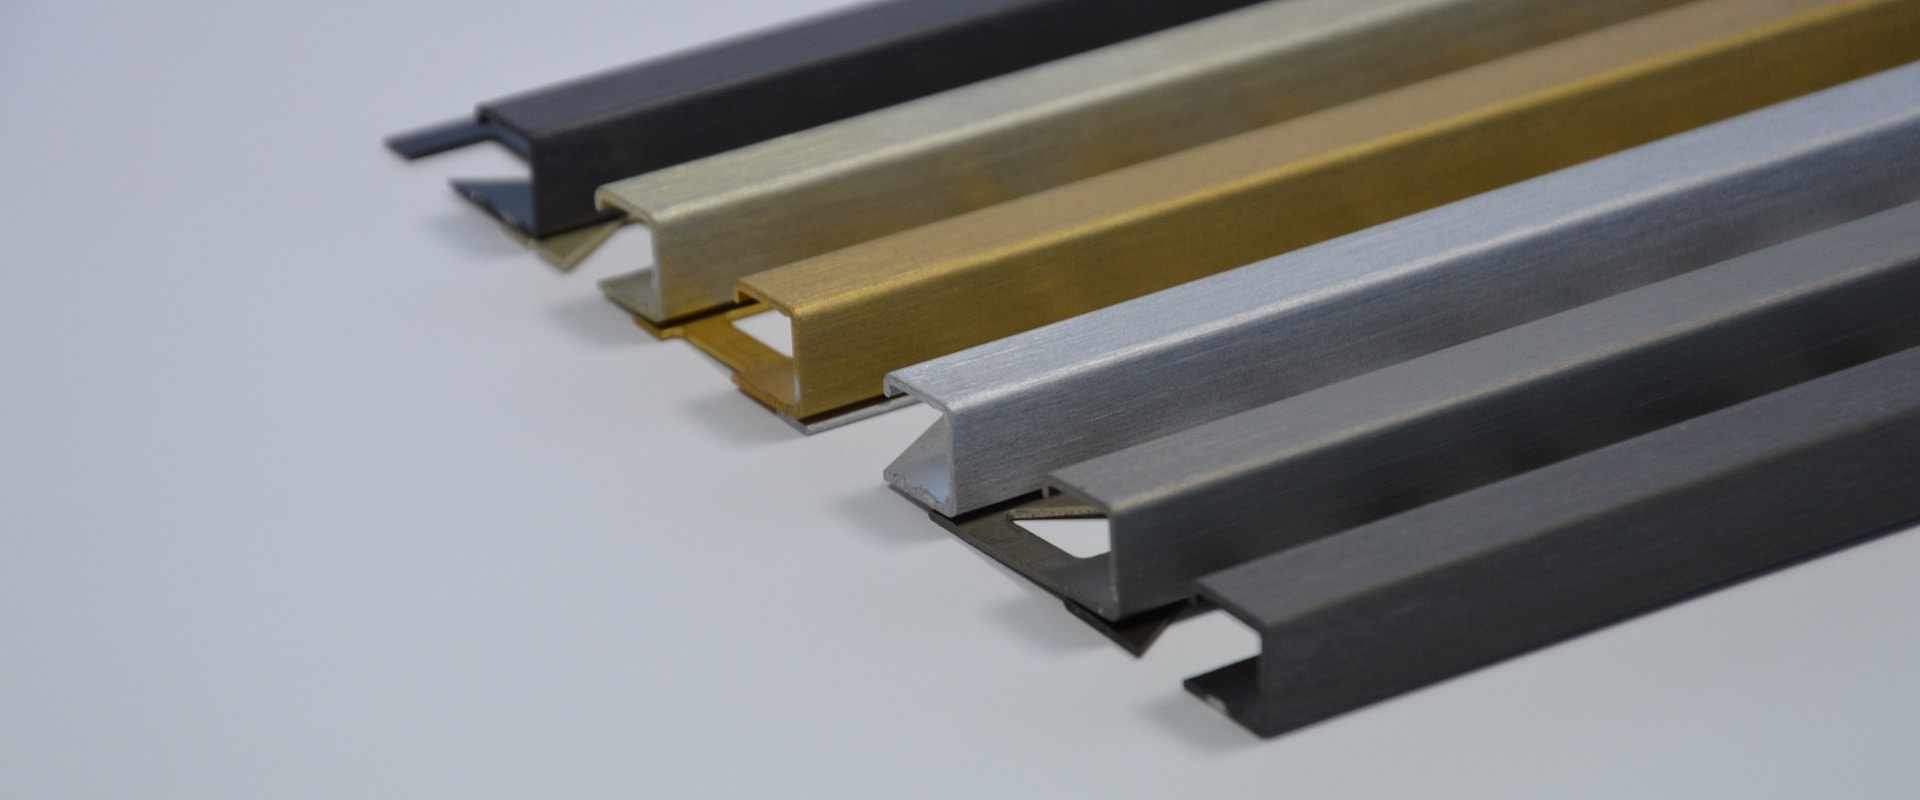 Neben der mechanischen Bearbeitung und dem Eloxieren rundet das Färben von Aluminium das große Leistungsspektrum von Struwe Eloxal in Schmallenberg ab.